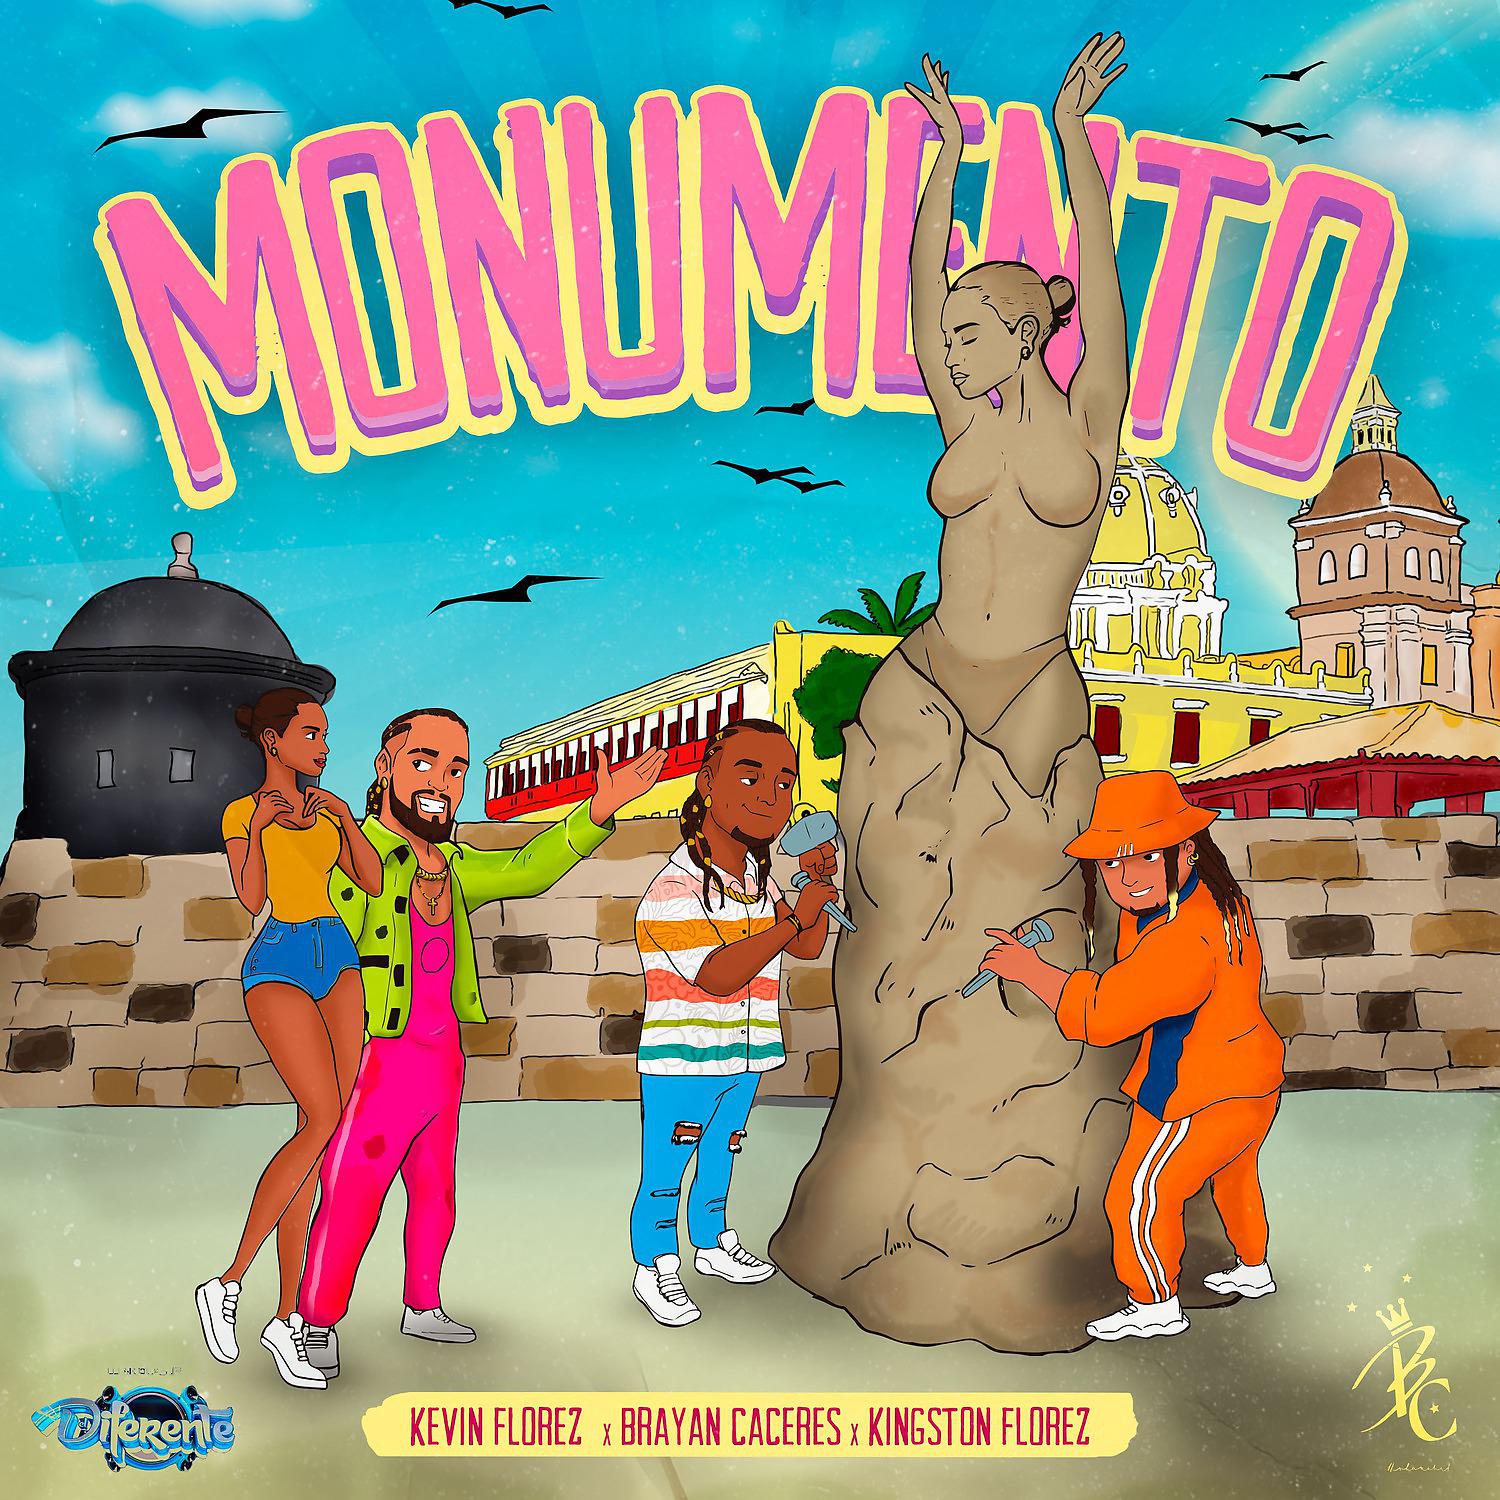 Постер альбома Monumento